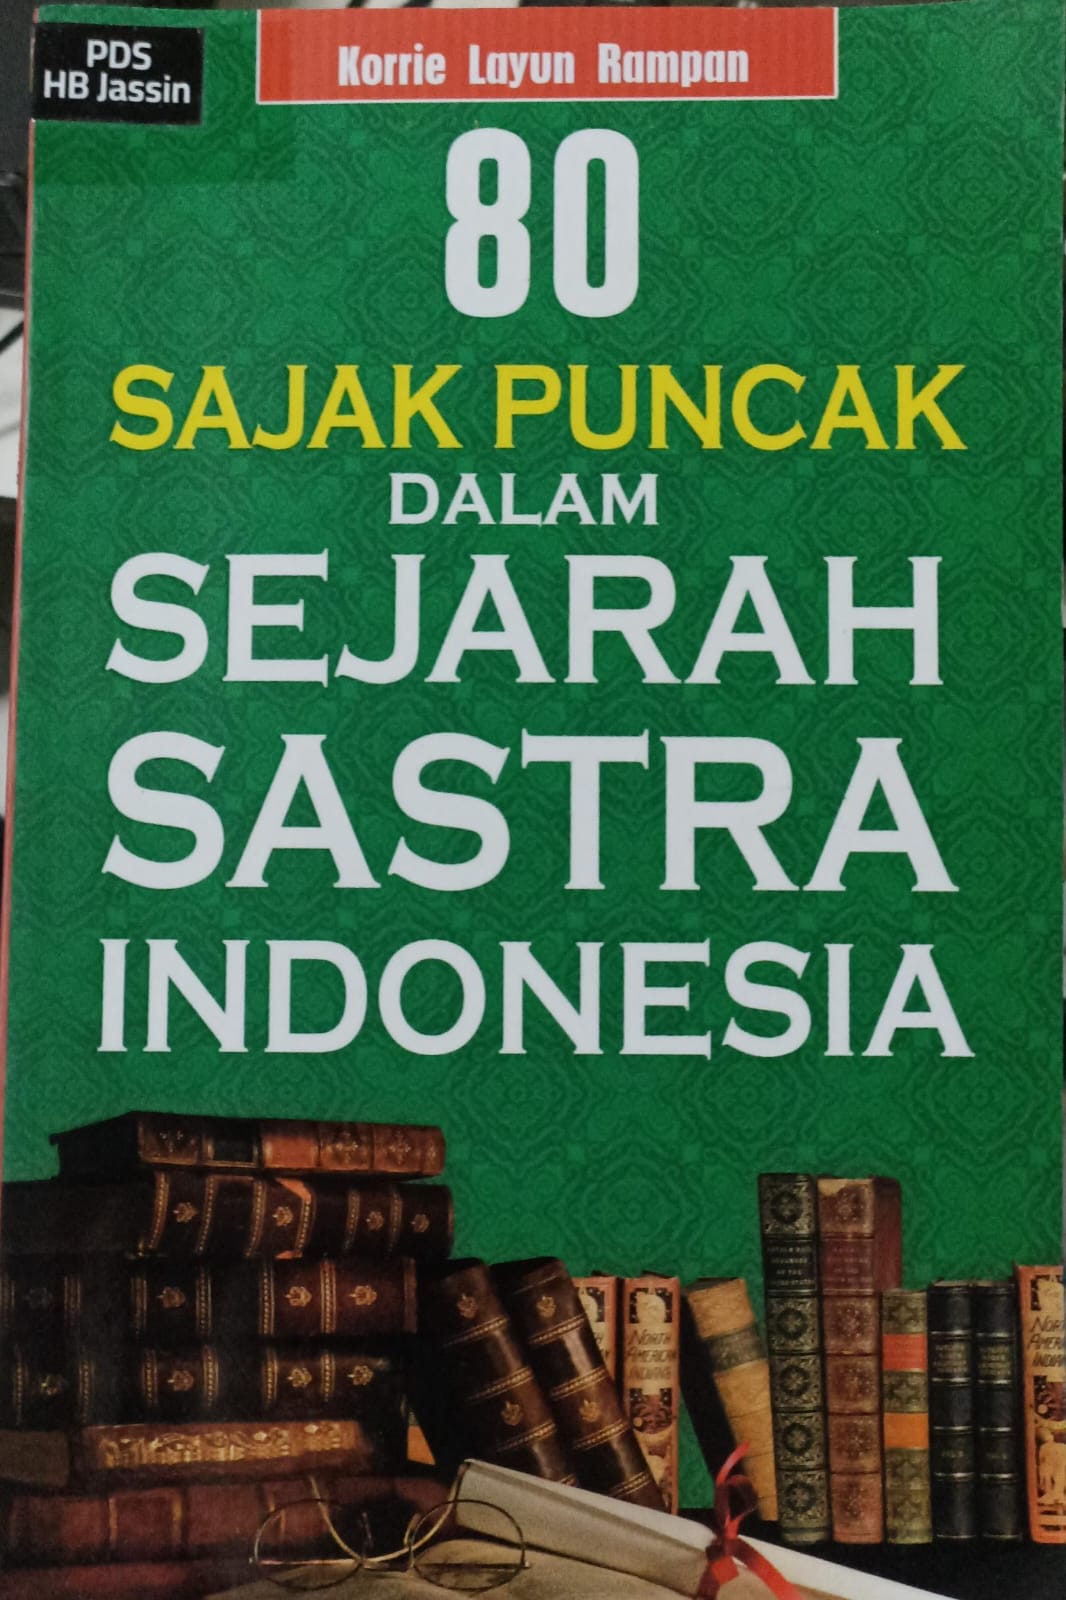 80 sajak puncak dalam sejarah sastra Indonesia